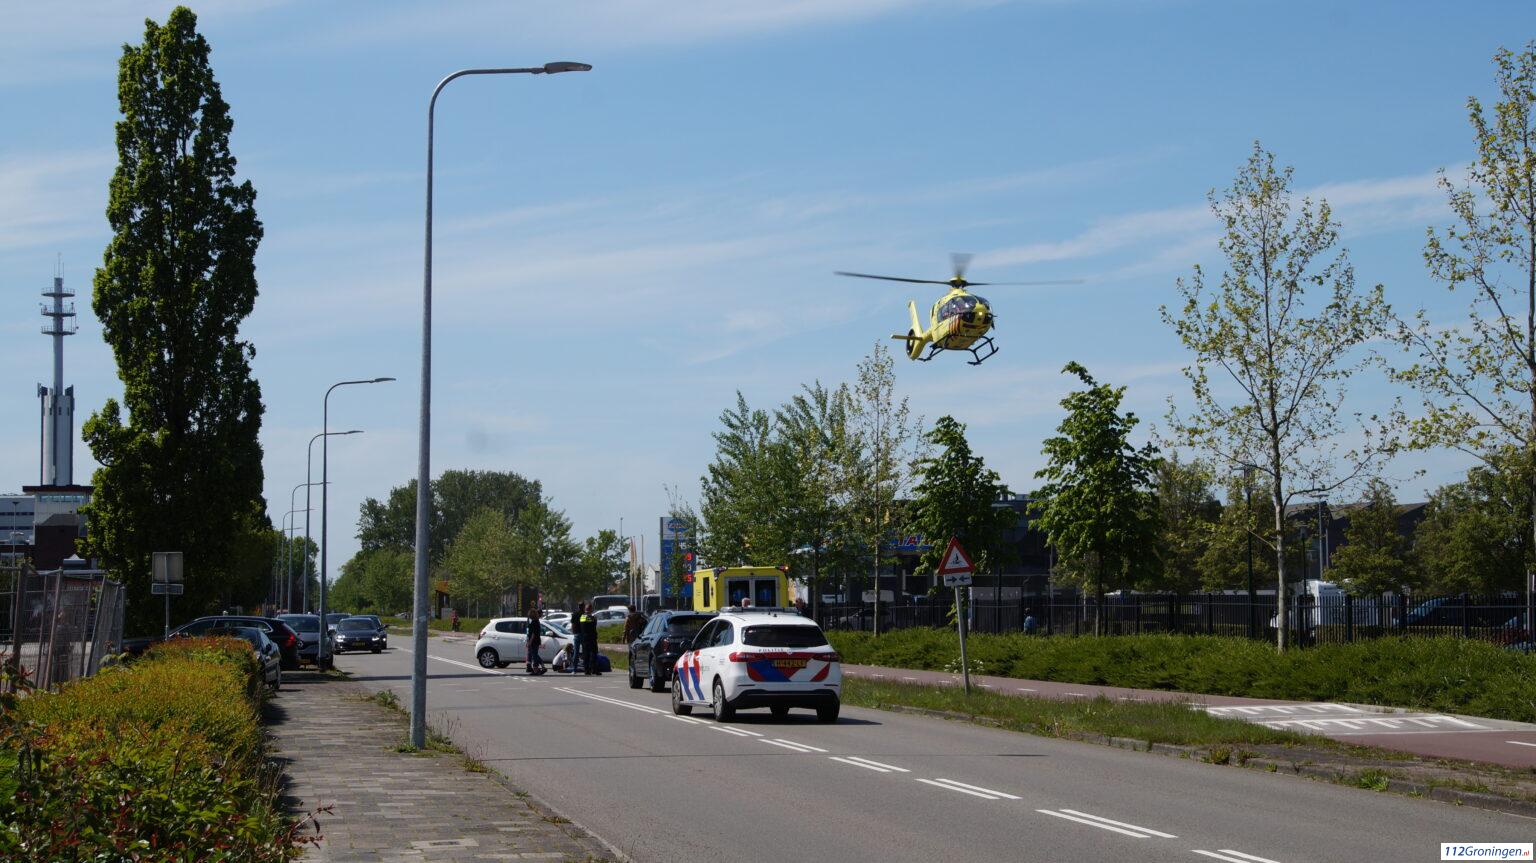 Ernstig ongeval Peizerweg Groningen, 1 gewonde.